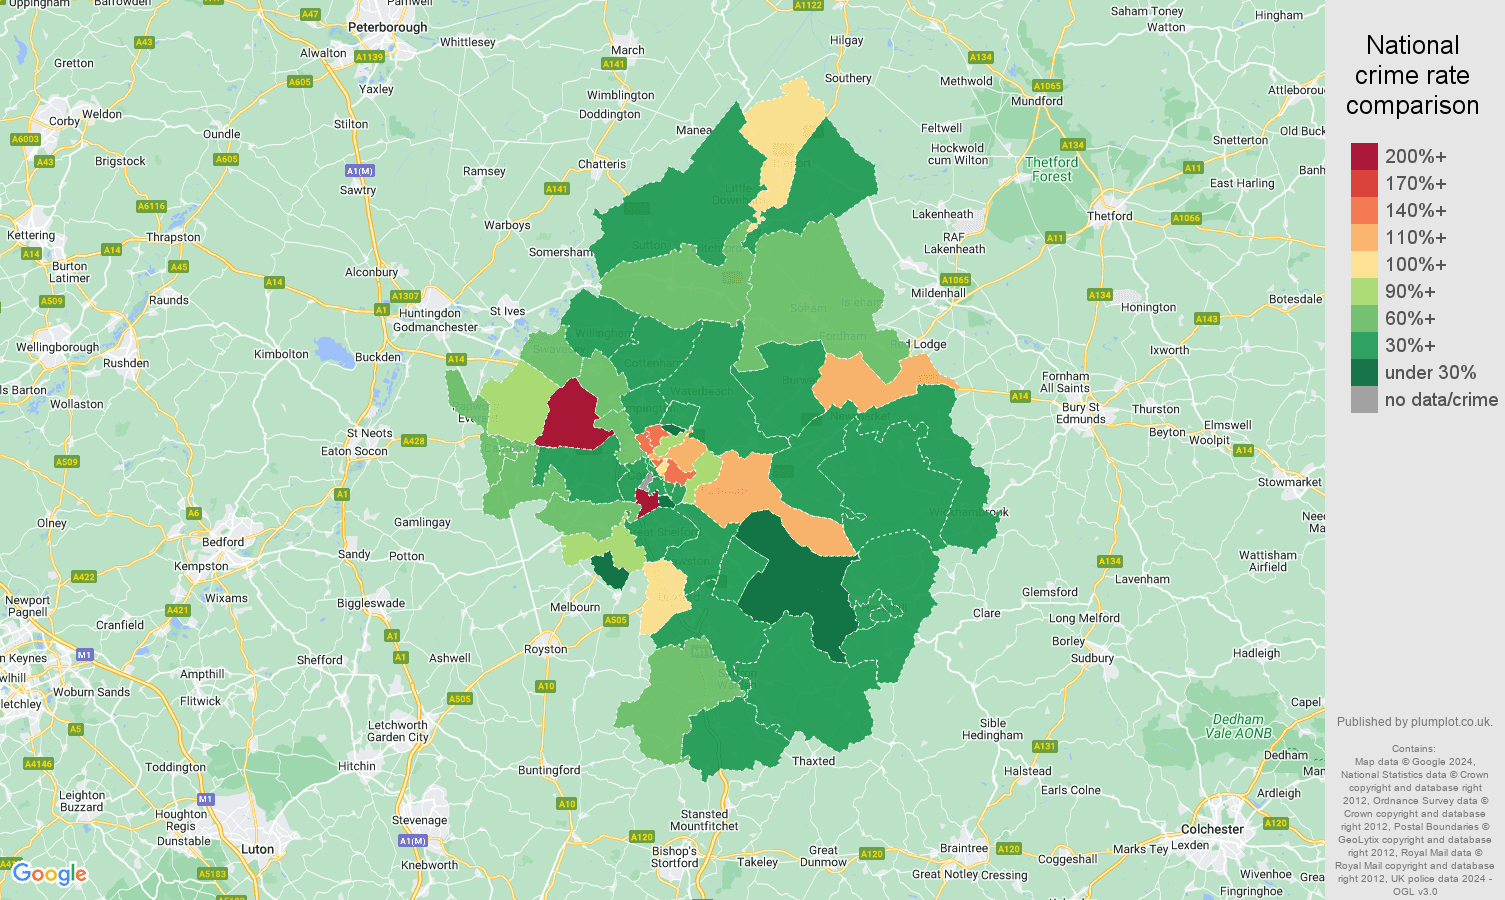 Cambridge vehicle crime rate comparison map